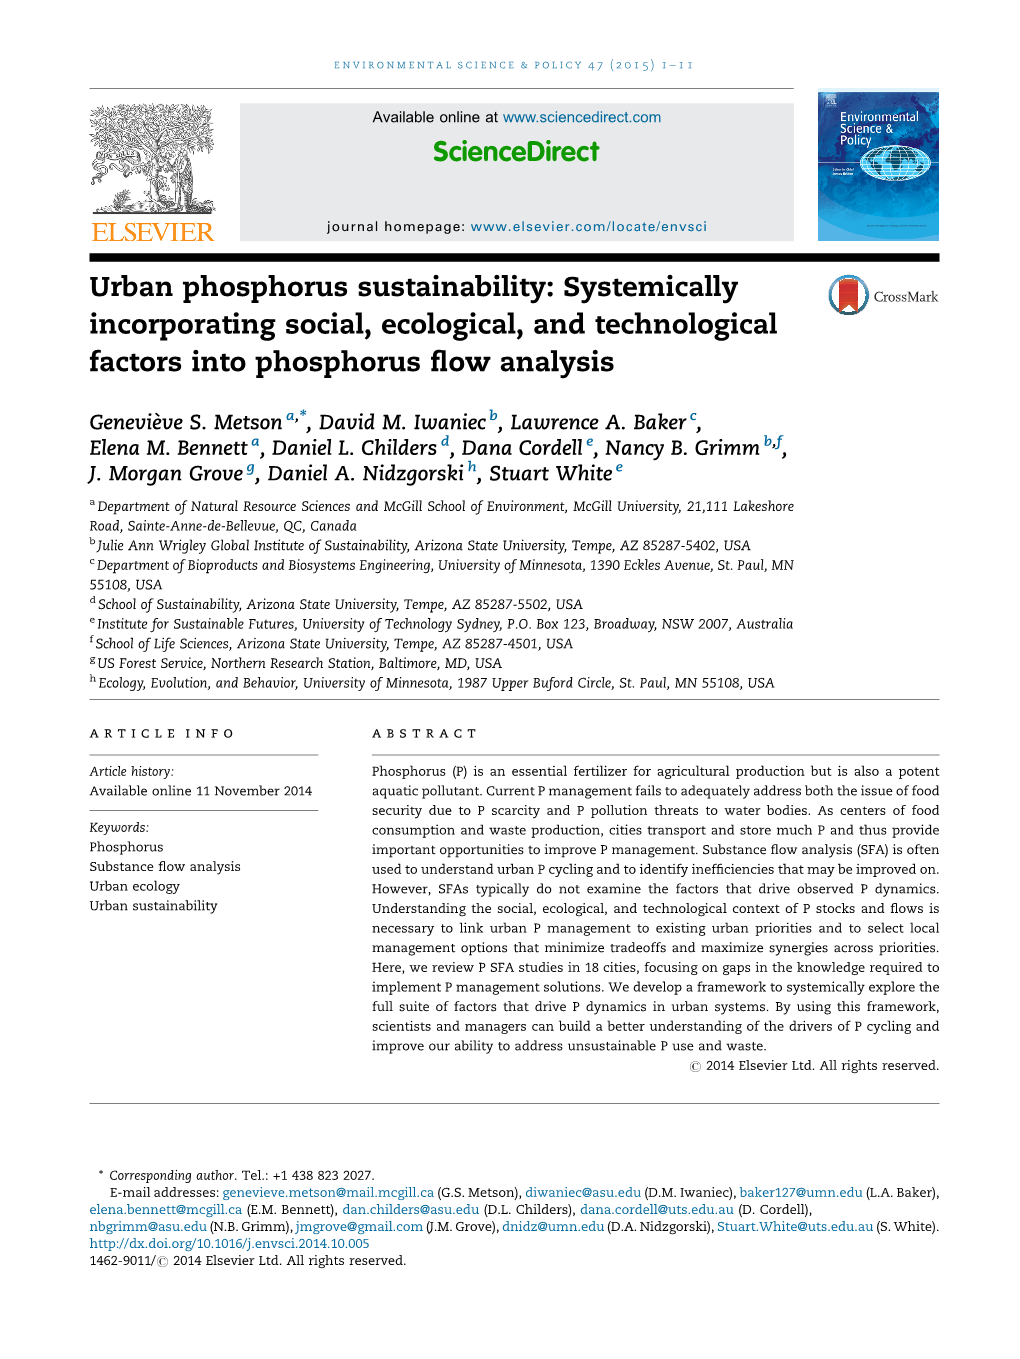 Urban Phosphorus Sustainability: Systemically